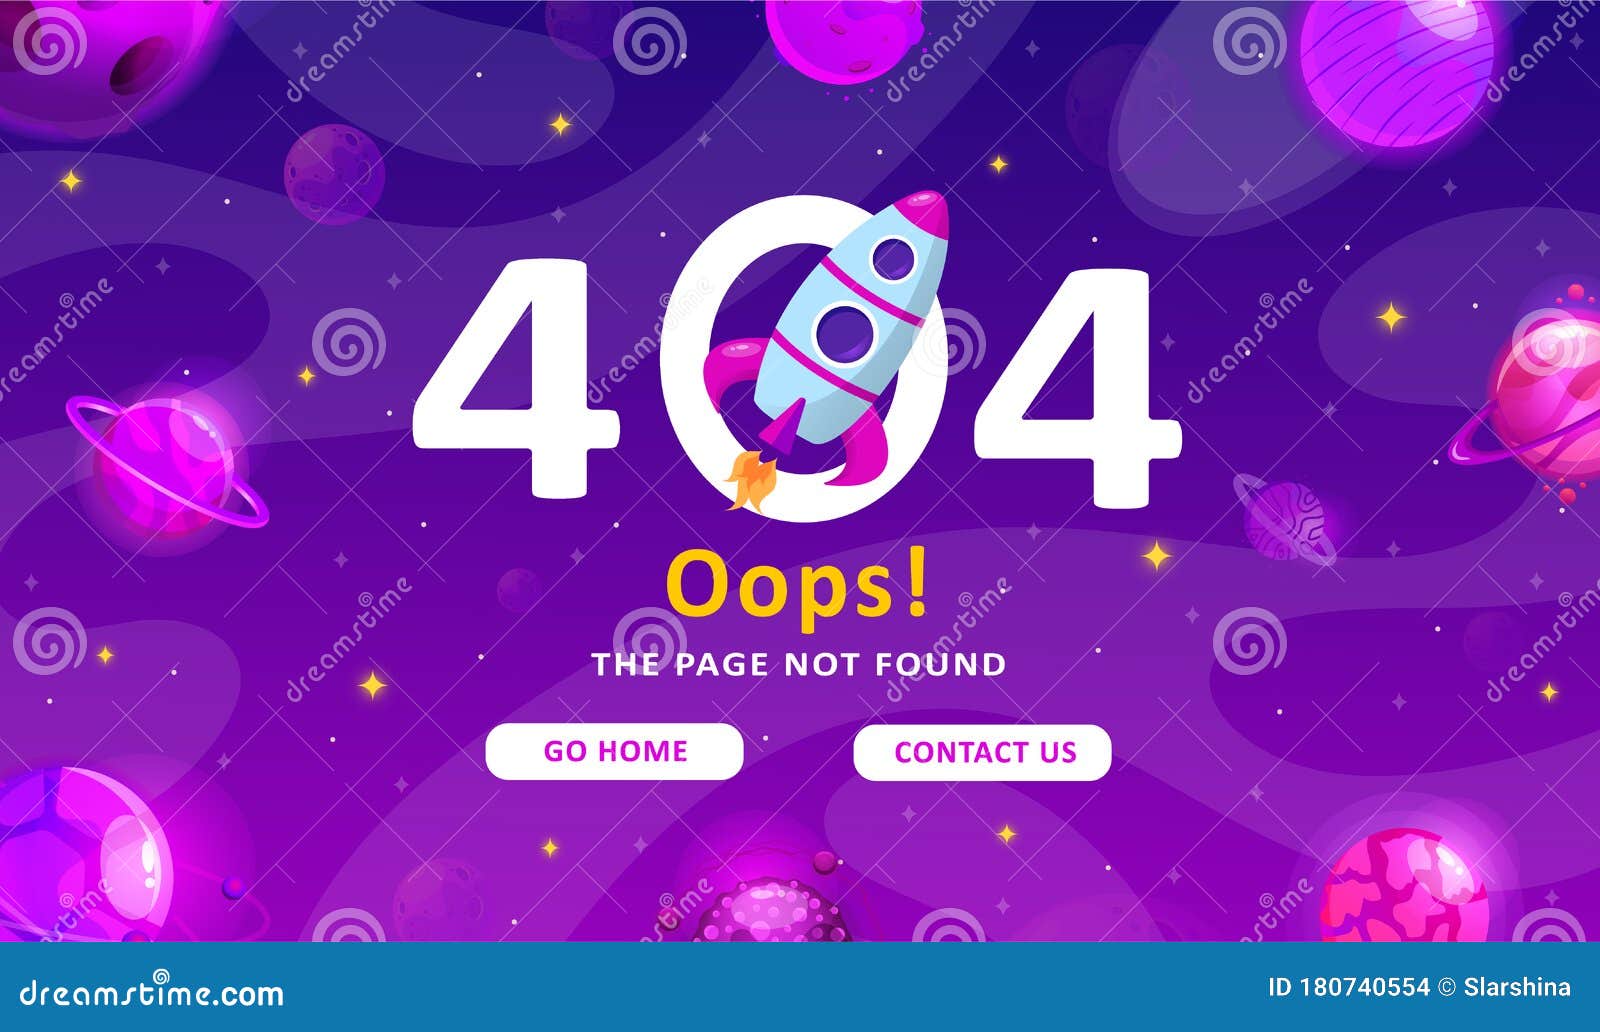 Nếu bạn đang bối rối với lỗi trang 404, thì hãy truy cập ngay vào hình ảnh liên quan để tìm hiểu ngay cách khắc phục vấn đề. Sẽ rất thú vị đấy!